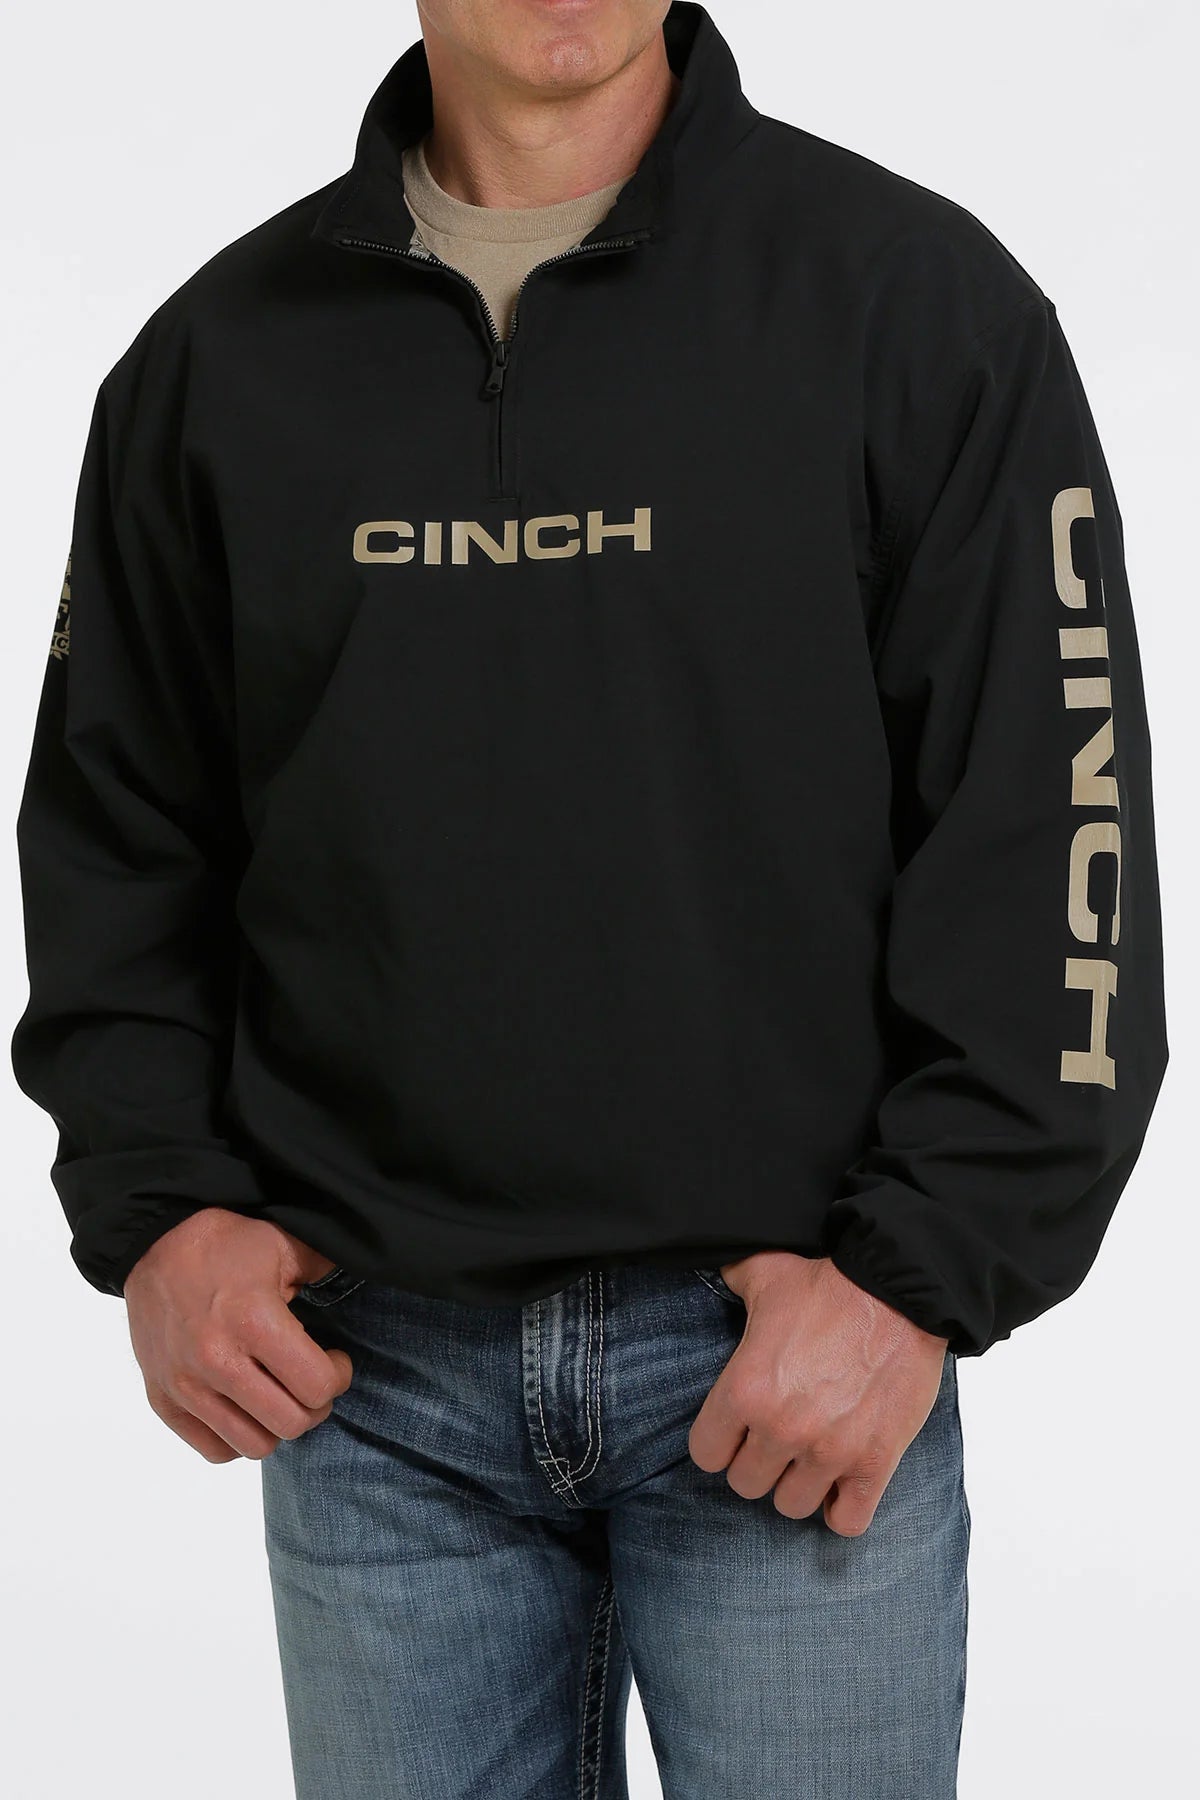 Cinch Men's Black Windbreaker Jacket